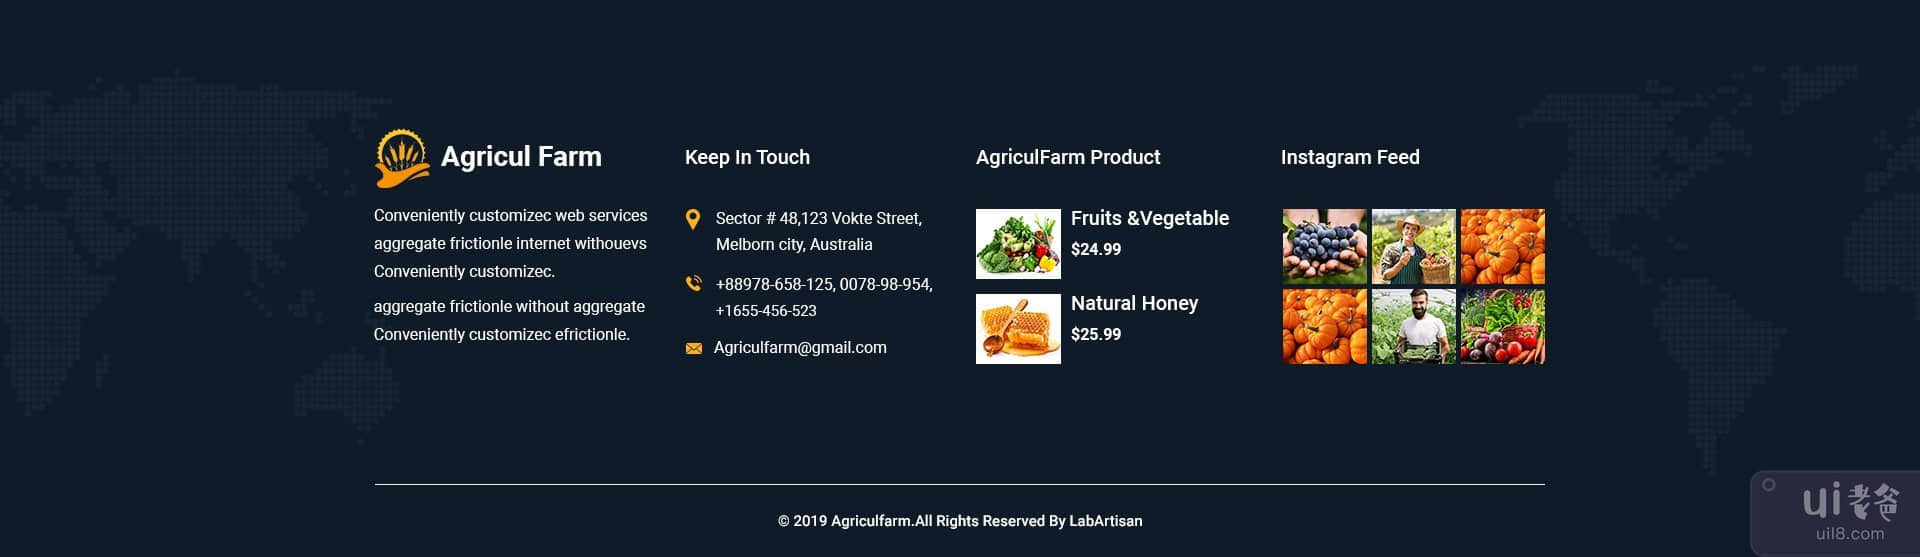 AgriculFarm - 农业和有机食品 PSD 模板(AgriculFarm - Agriculture & Organic Food PSD Template)插图2